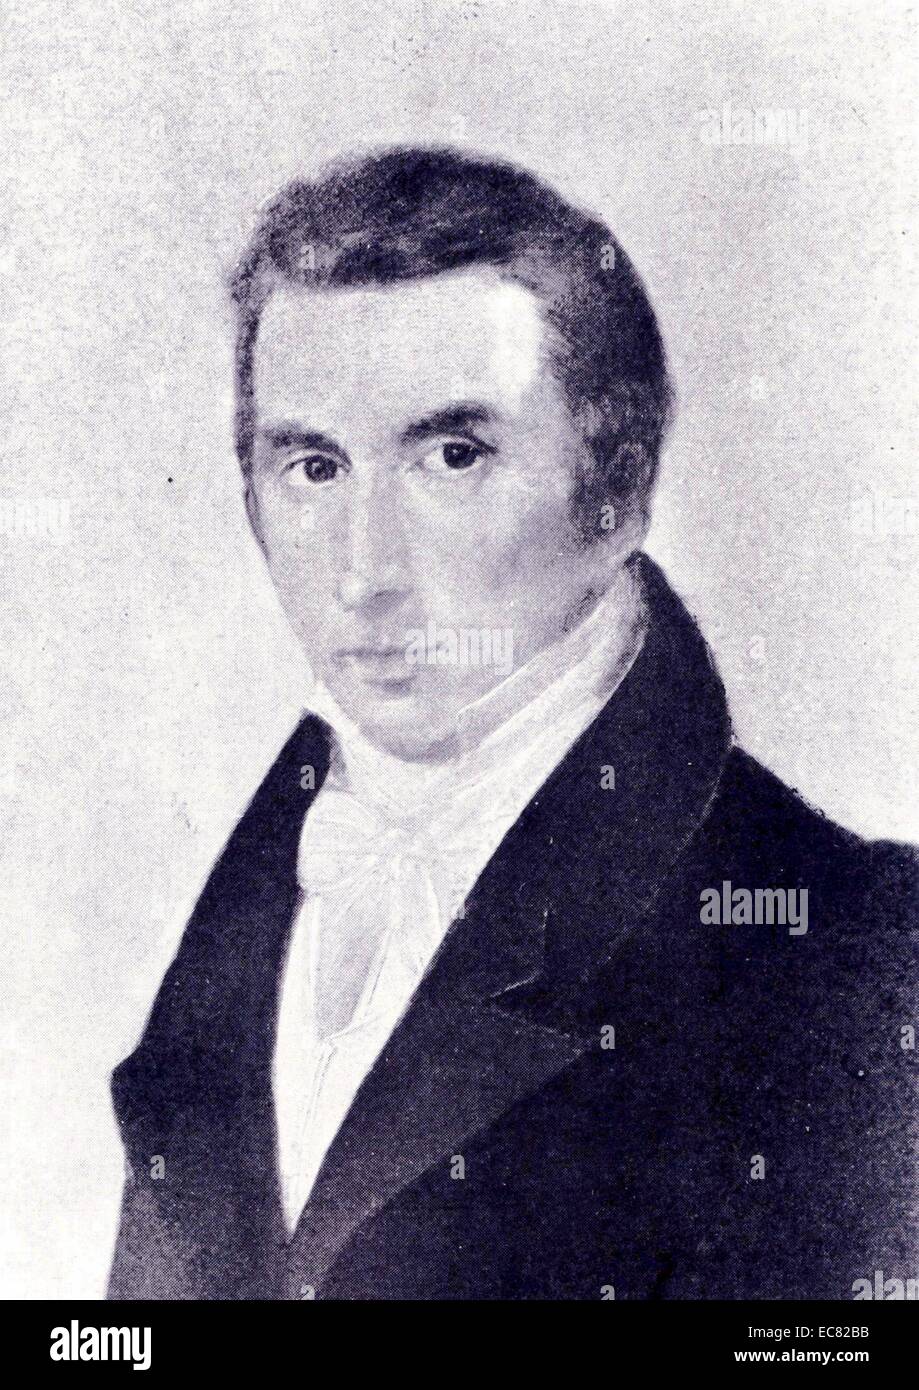 Frederic Chopin's father, Nicolas Chopin, by Mieroszewski, 1829 Stock Photo